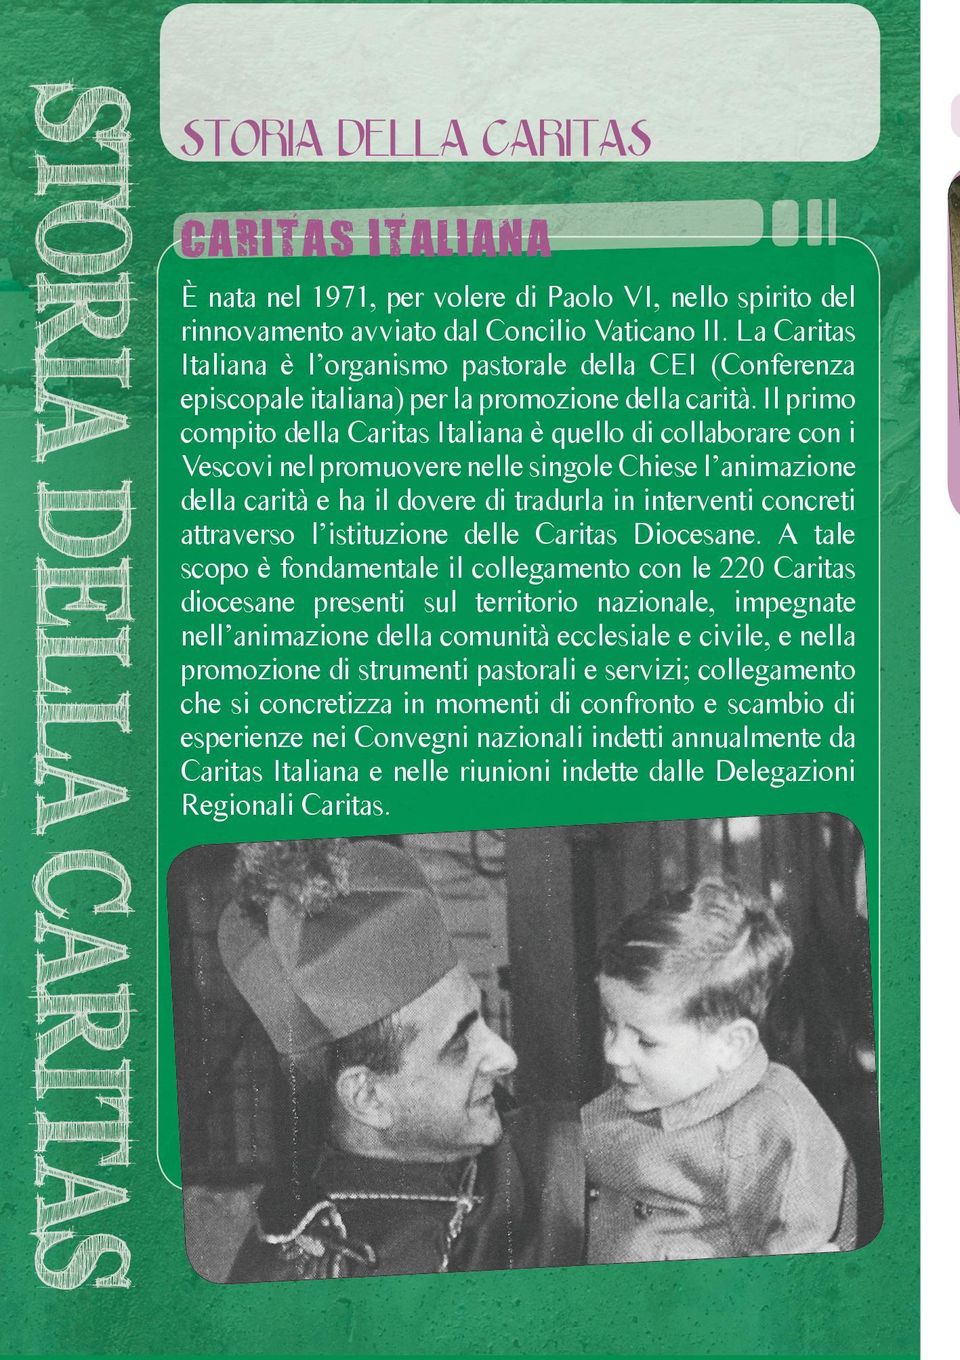 Il primo compito della Caritas Italiana è quello di collaborare con i Vescovi nel promuovere nelle singole Chiese l animazione della carità e ha il dovere di tradurla in interventi concreti